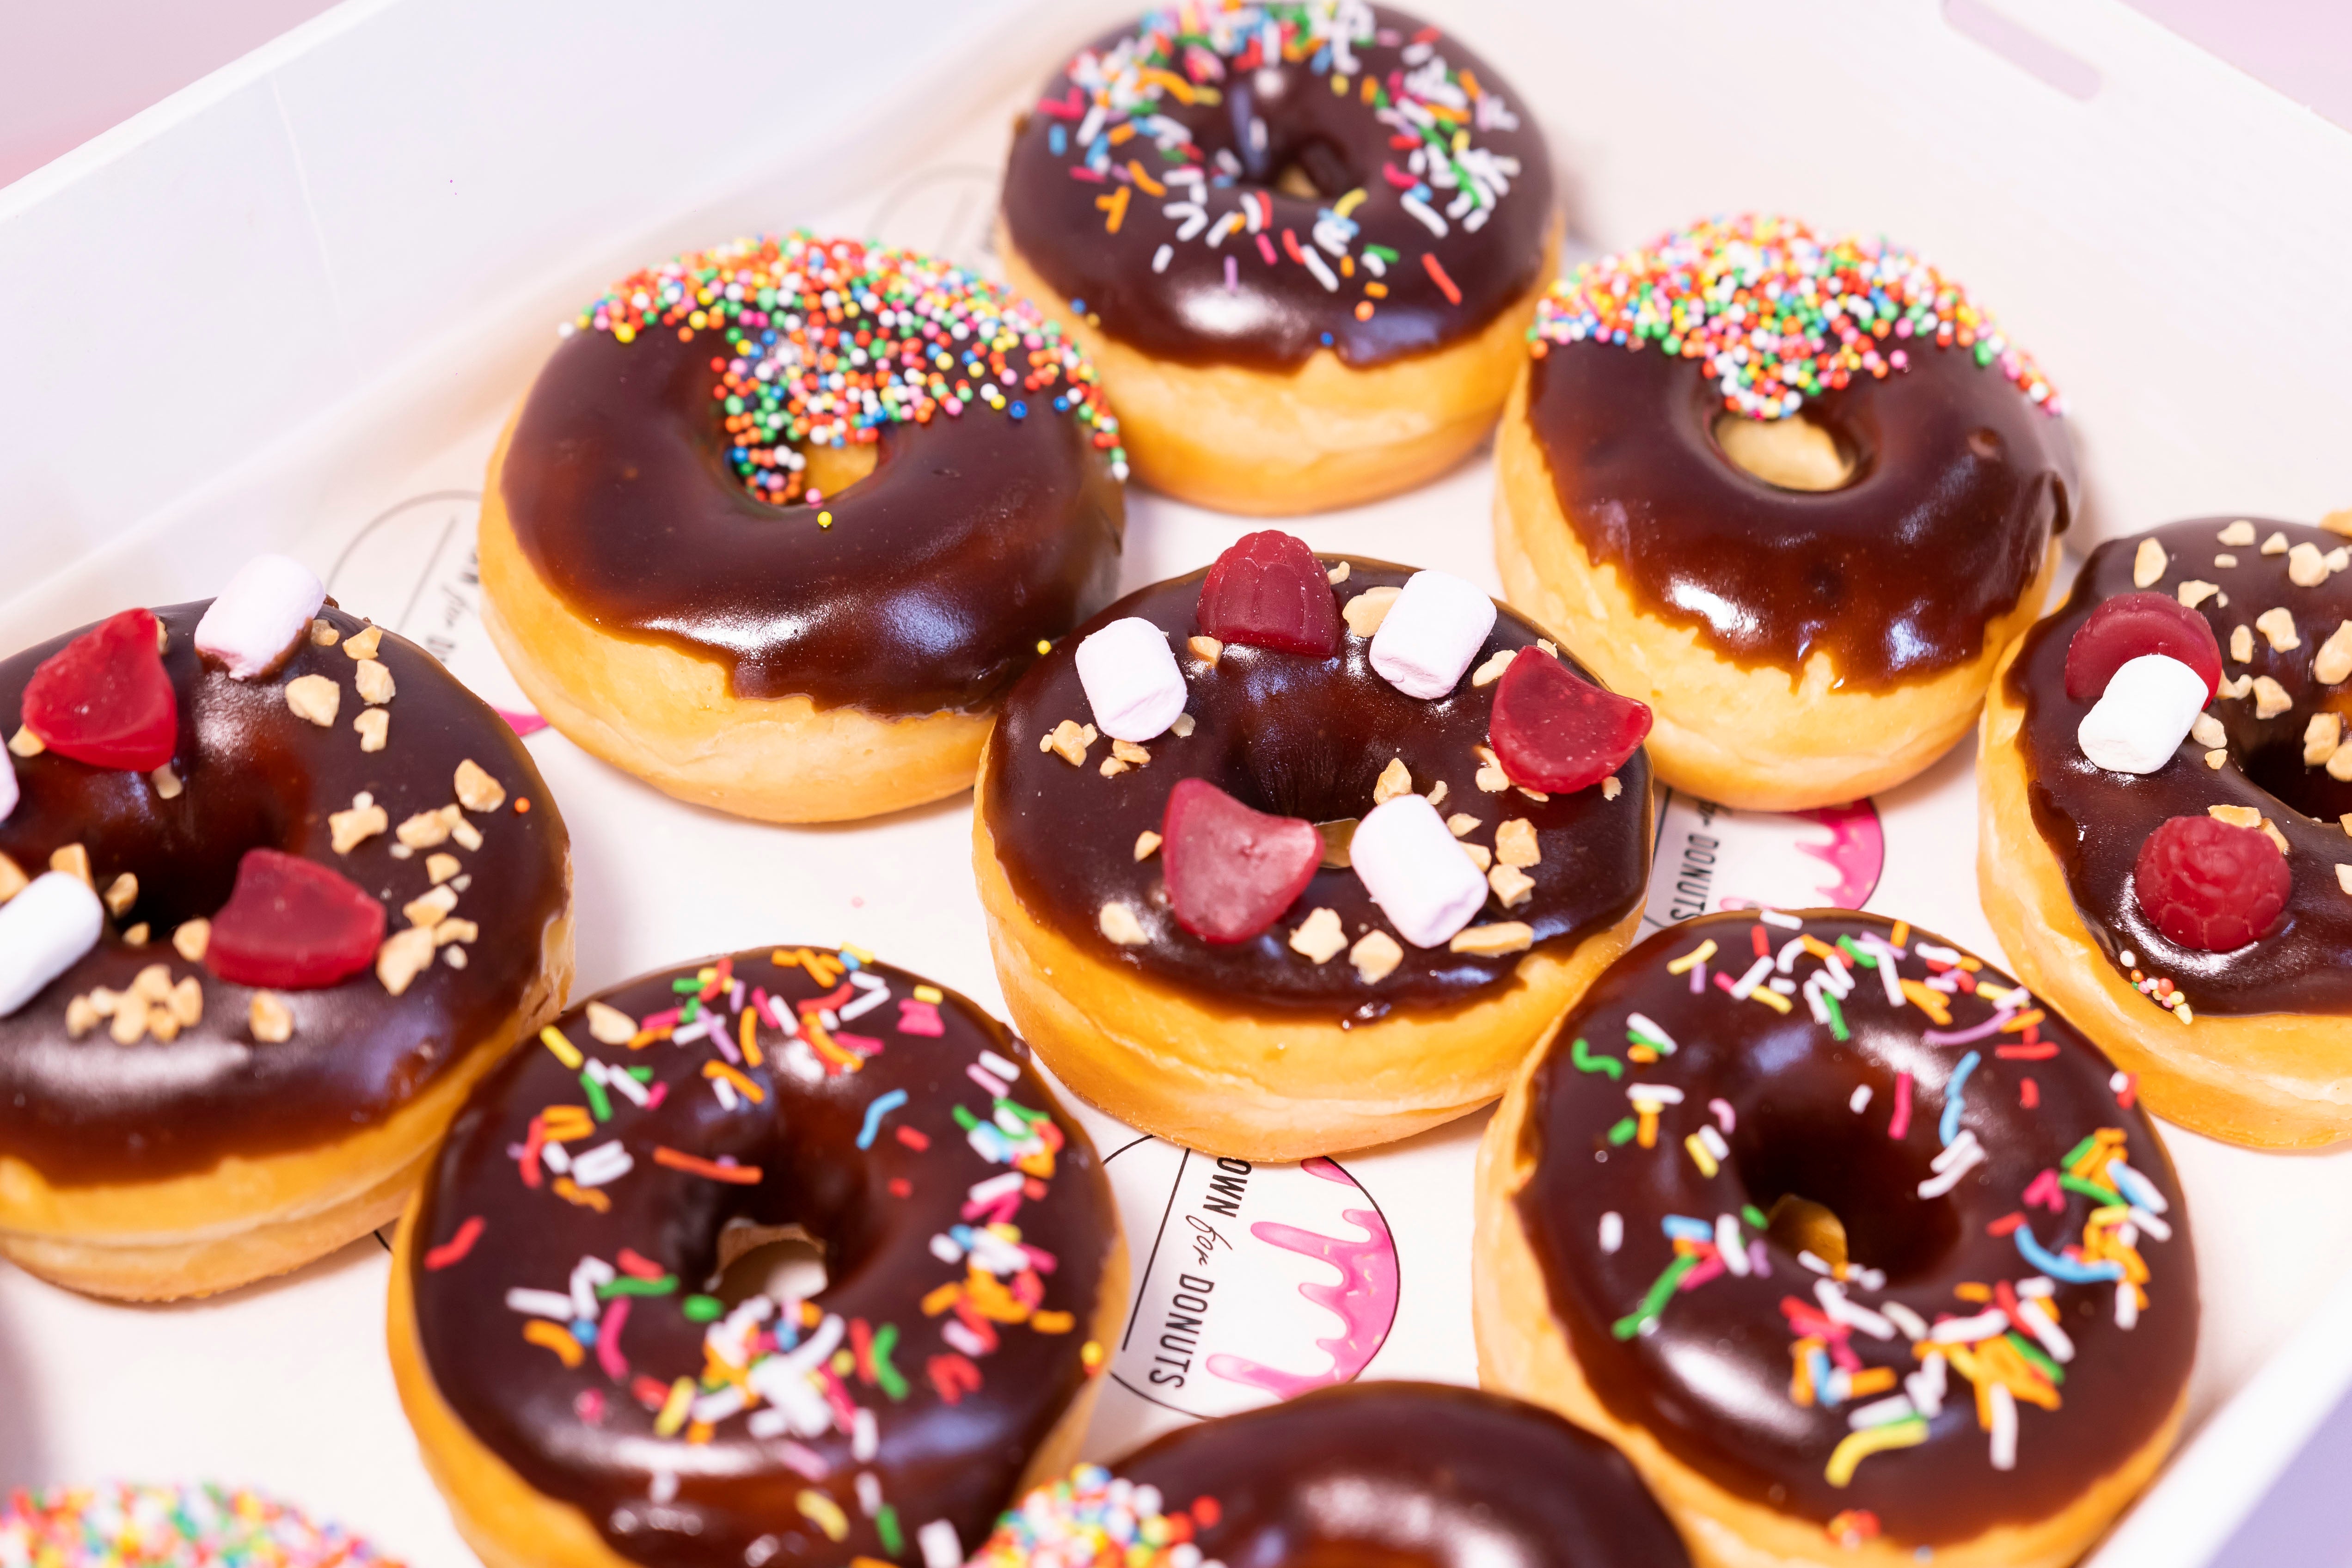 12 Chocolate Glazed Donuts